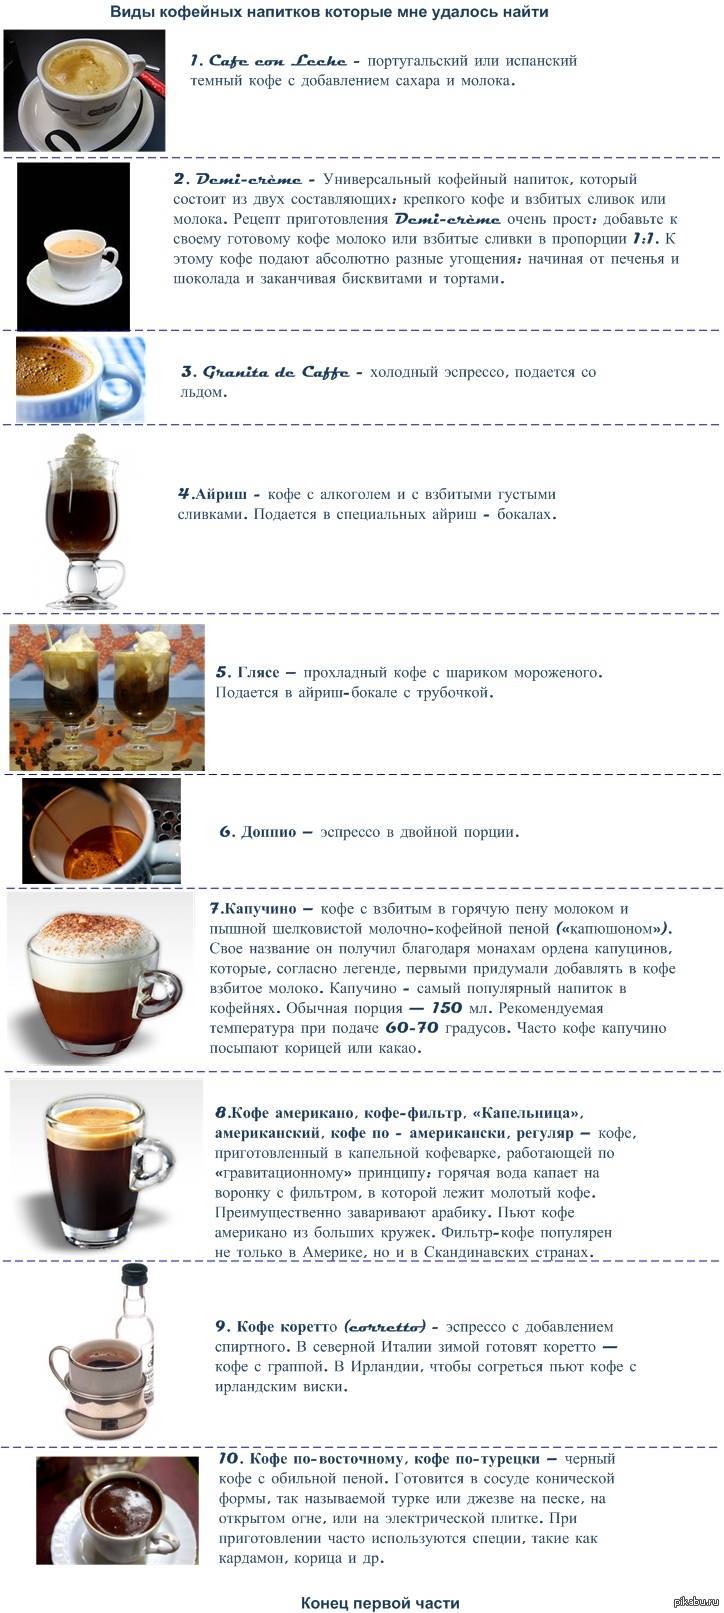 Книга кофейных рецептов